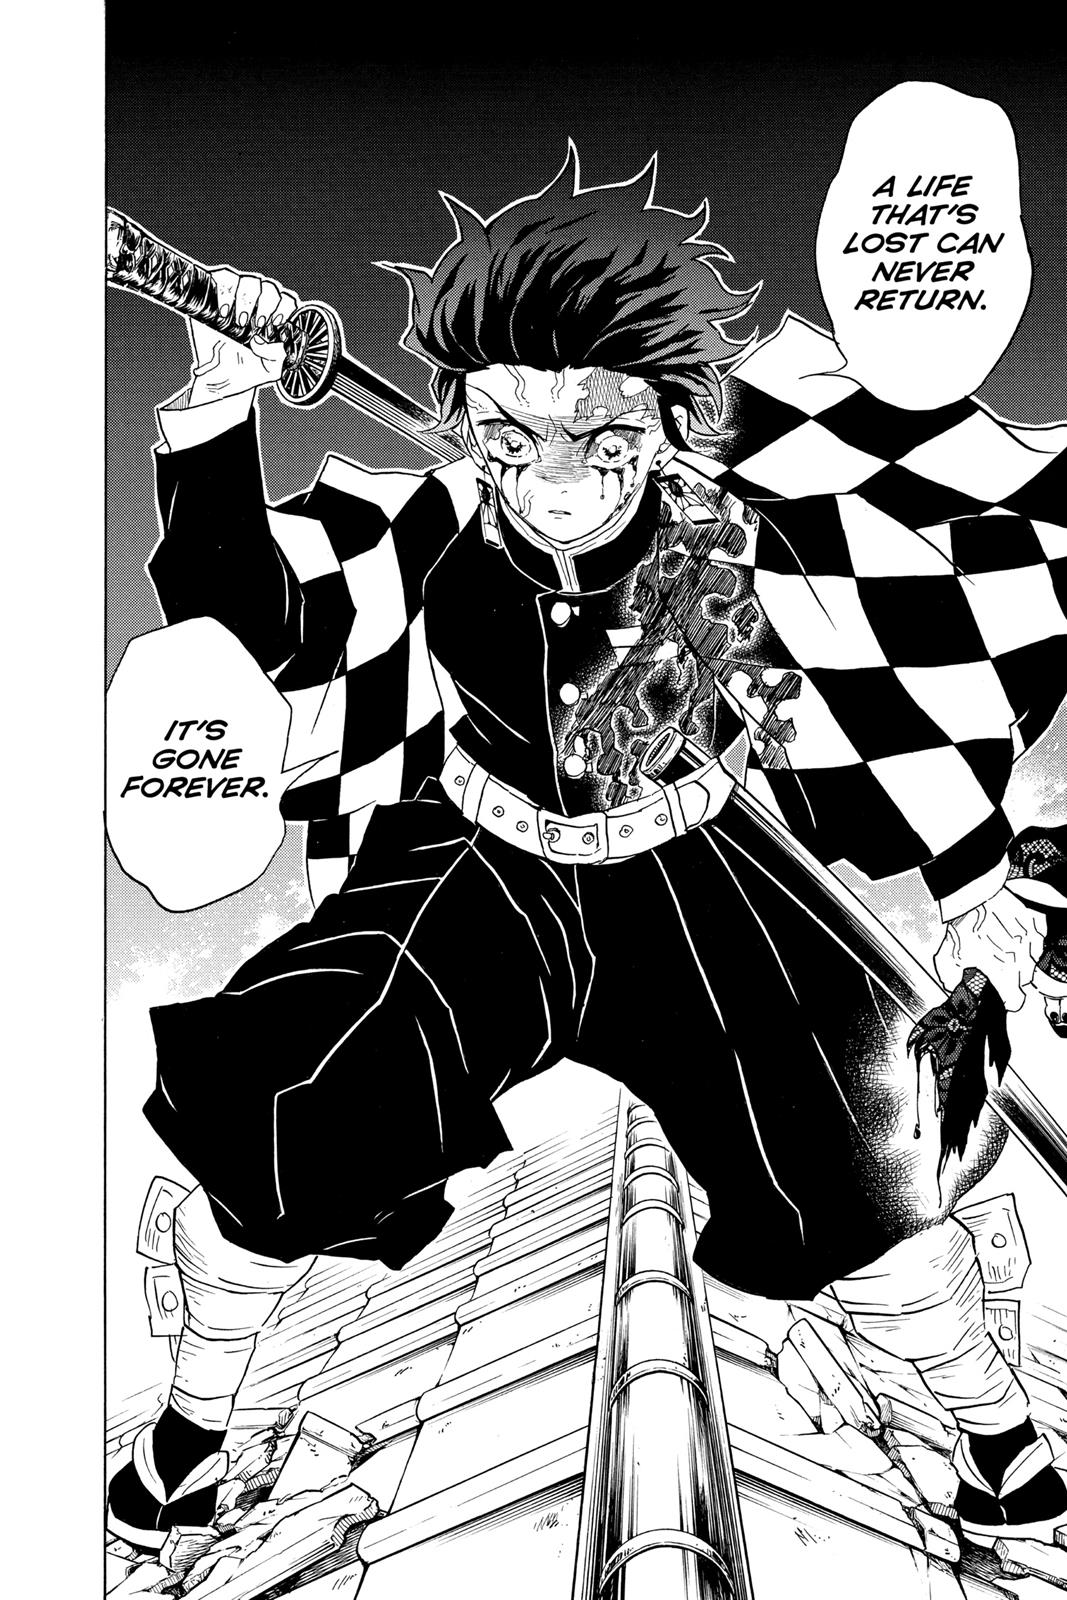 Demon Slayer Manga Manga Chapter - 81 - image 8